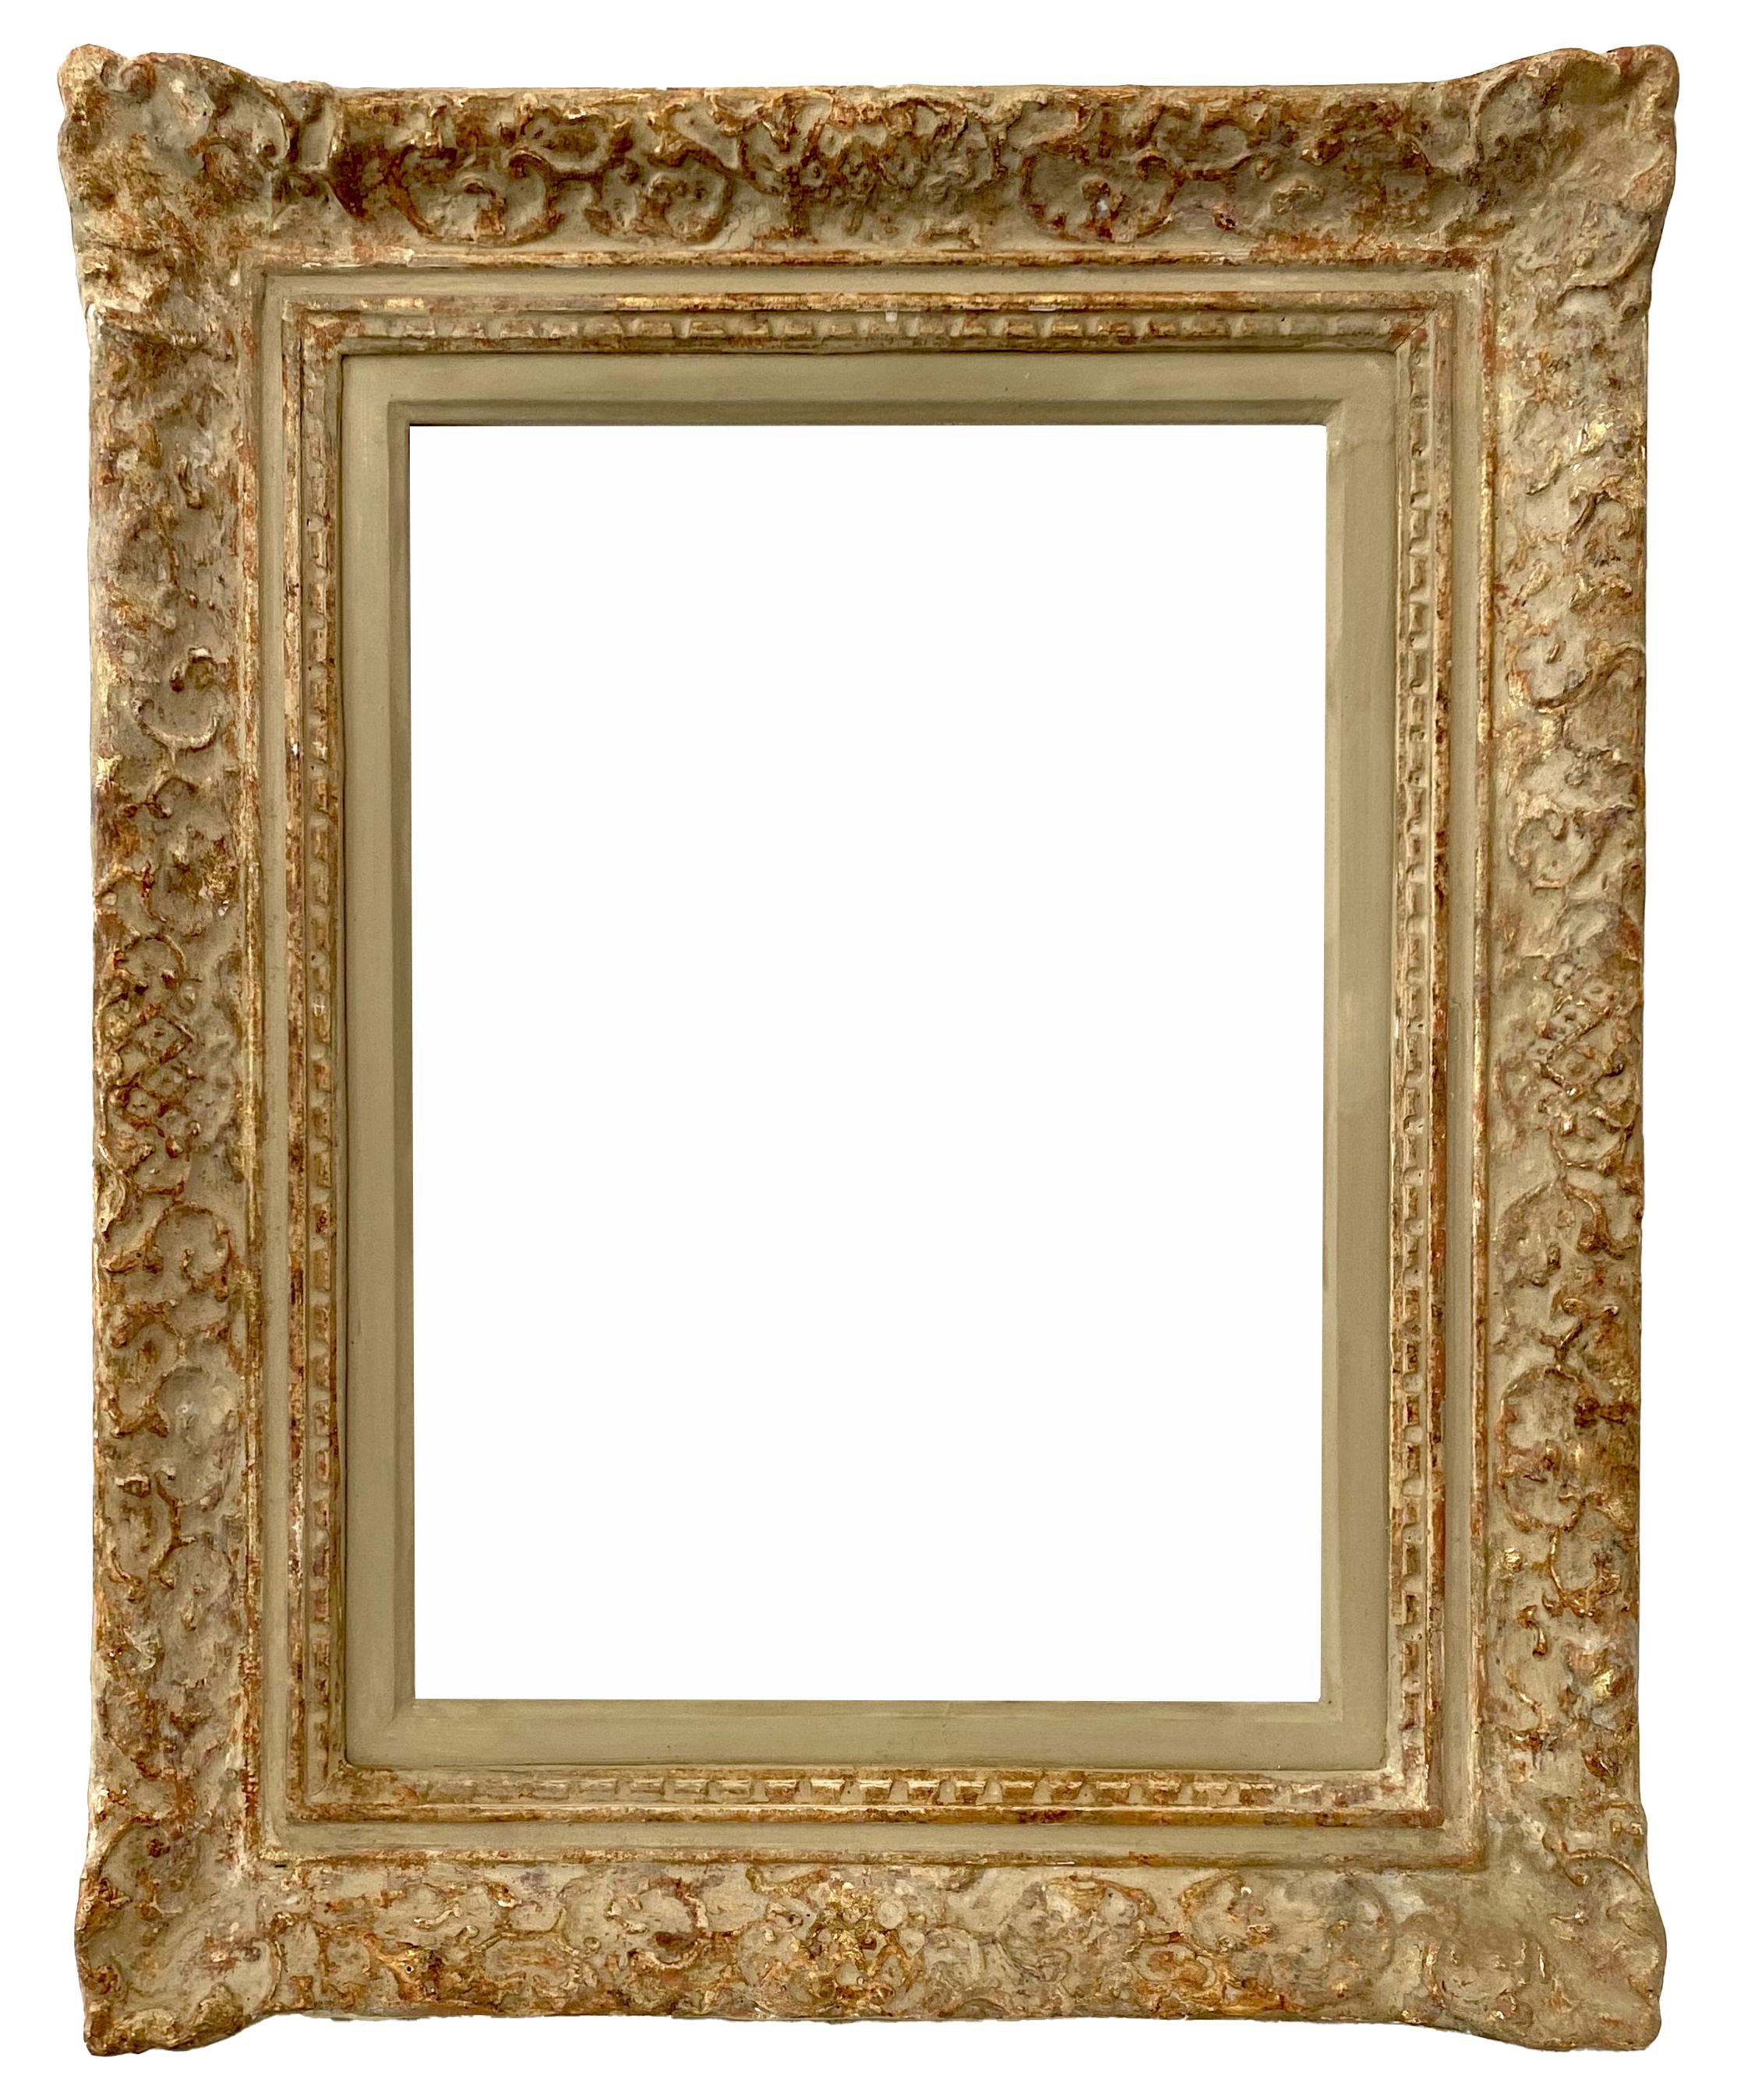 Montparnasse frame - 33.50 x 24.40 - Ref - 1638